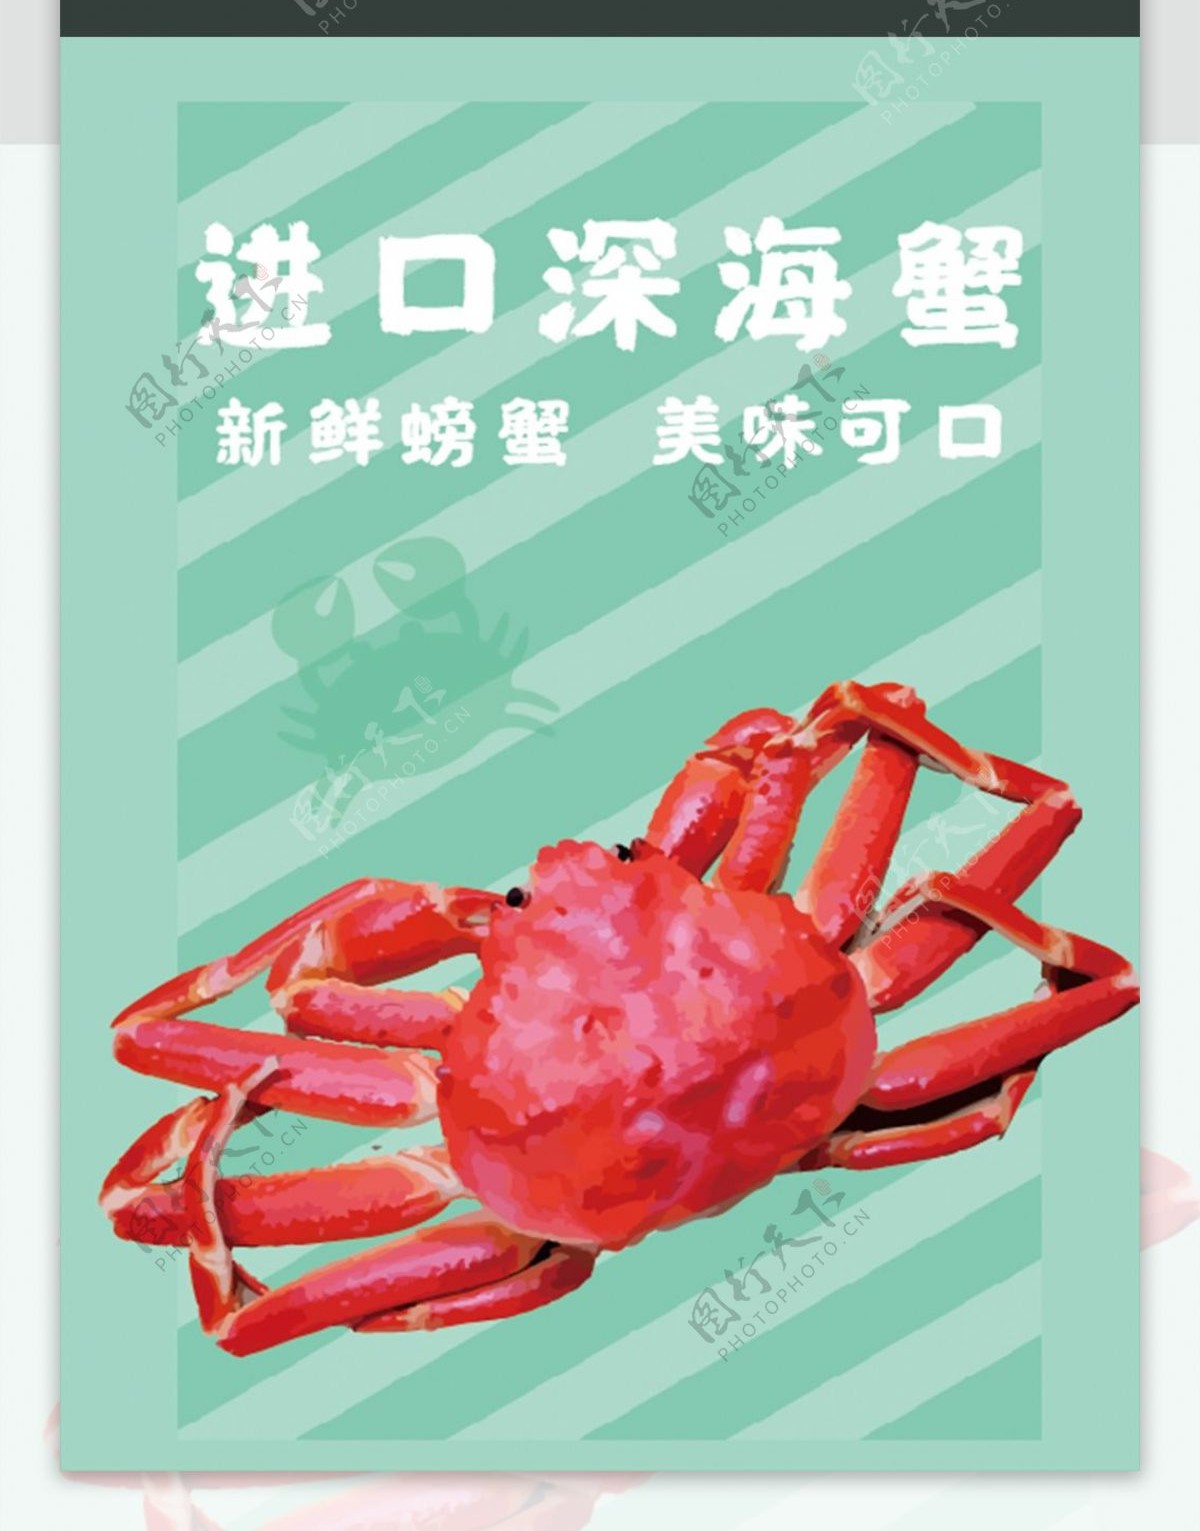 海鲜美食进口深海螃蟹包装插画